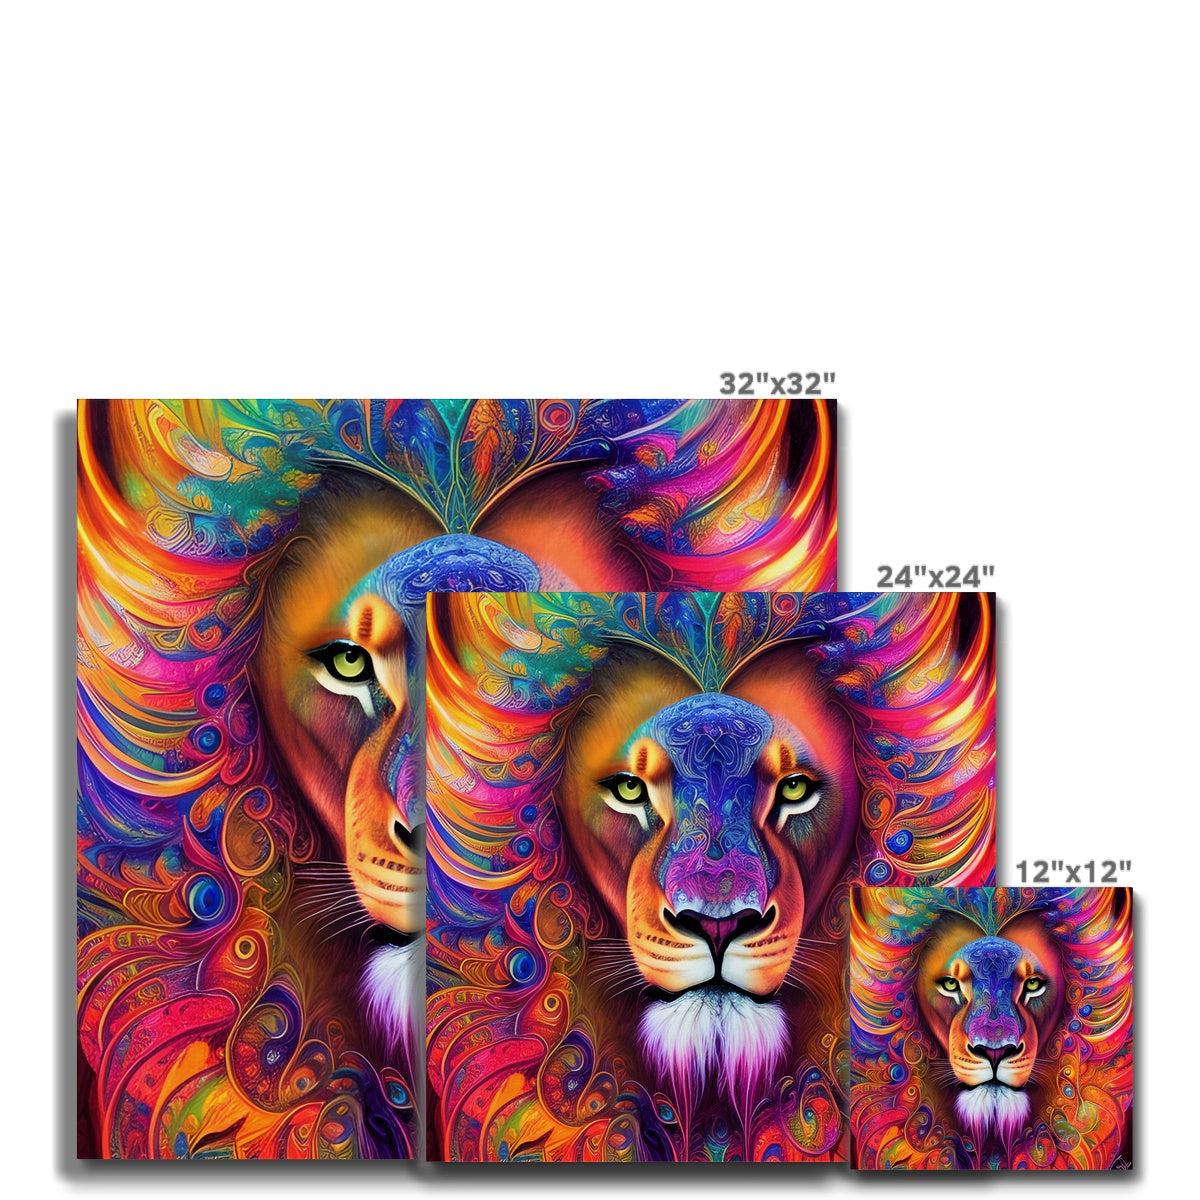 Mystical Lion Canvas